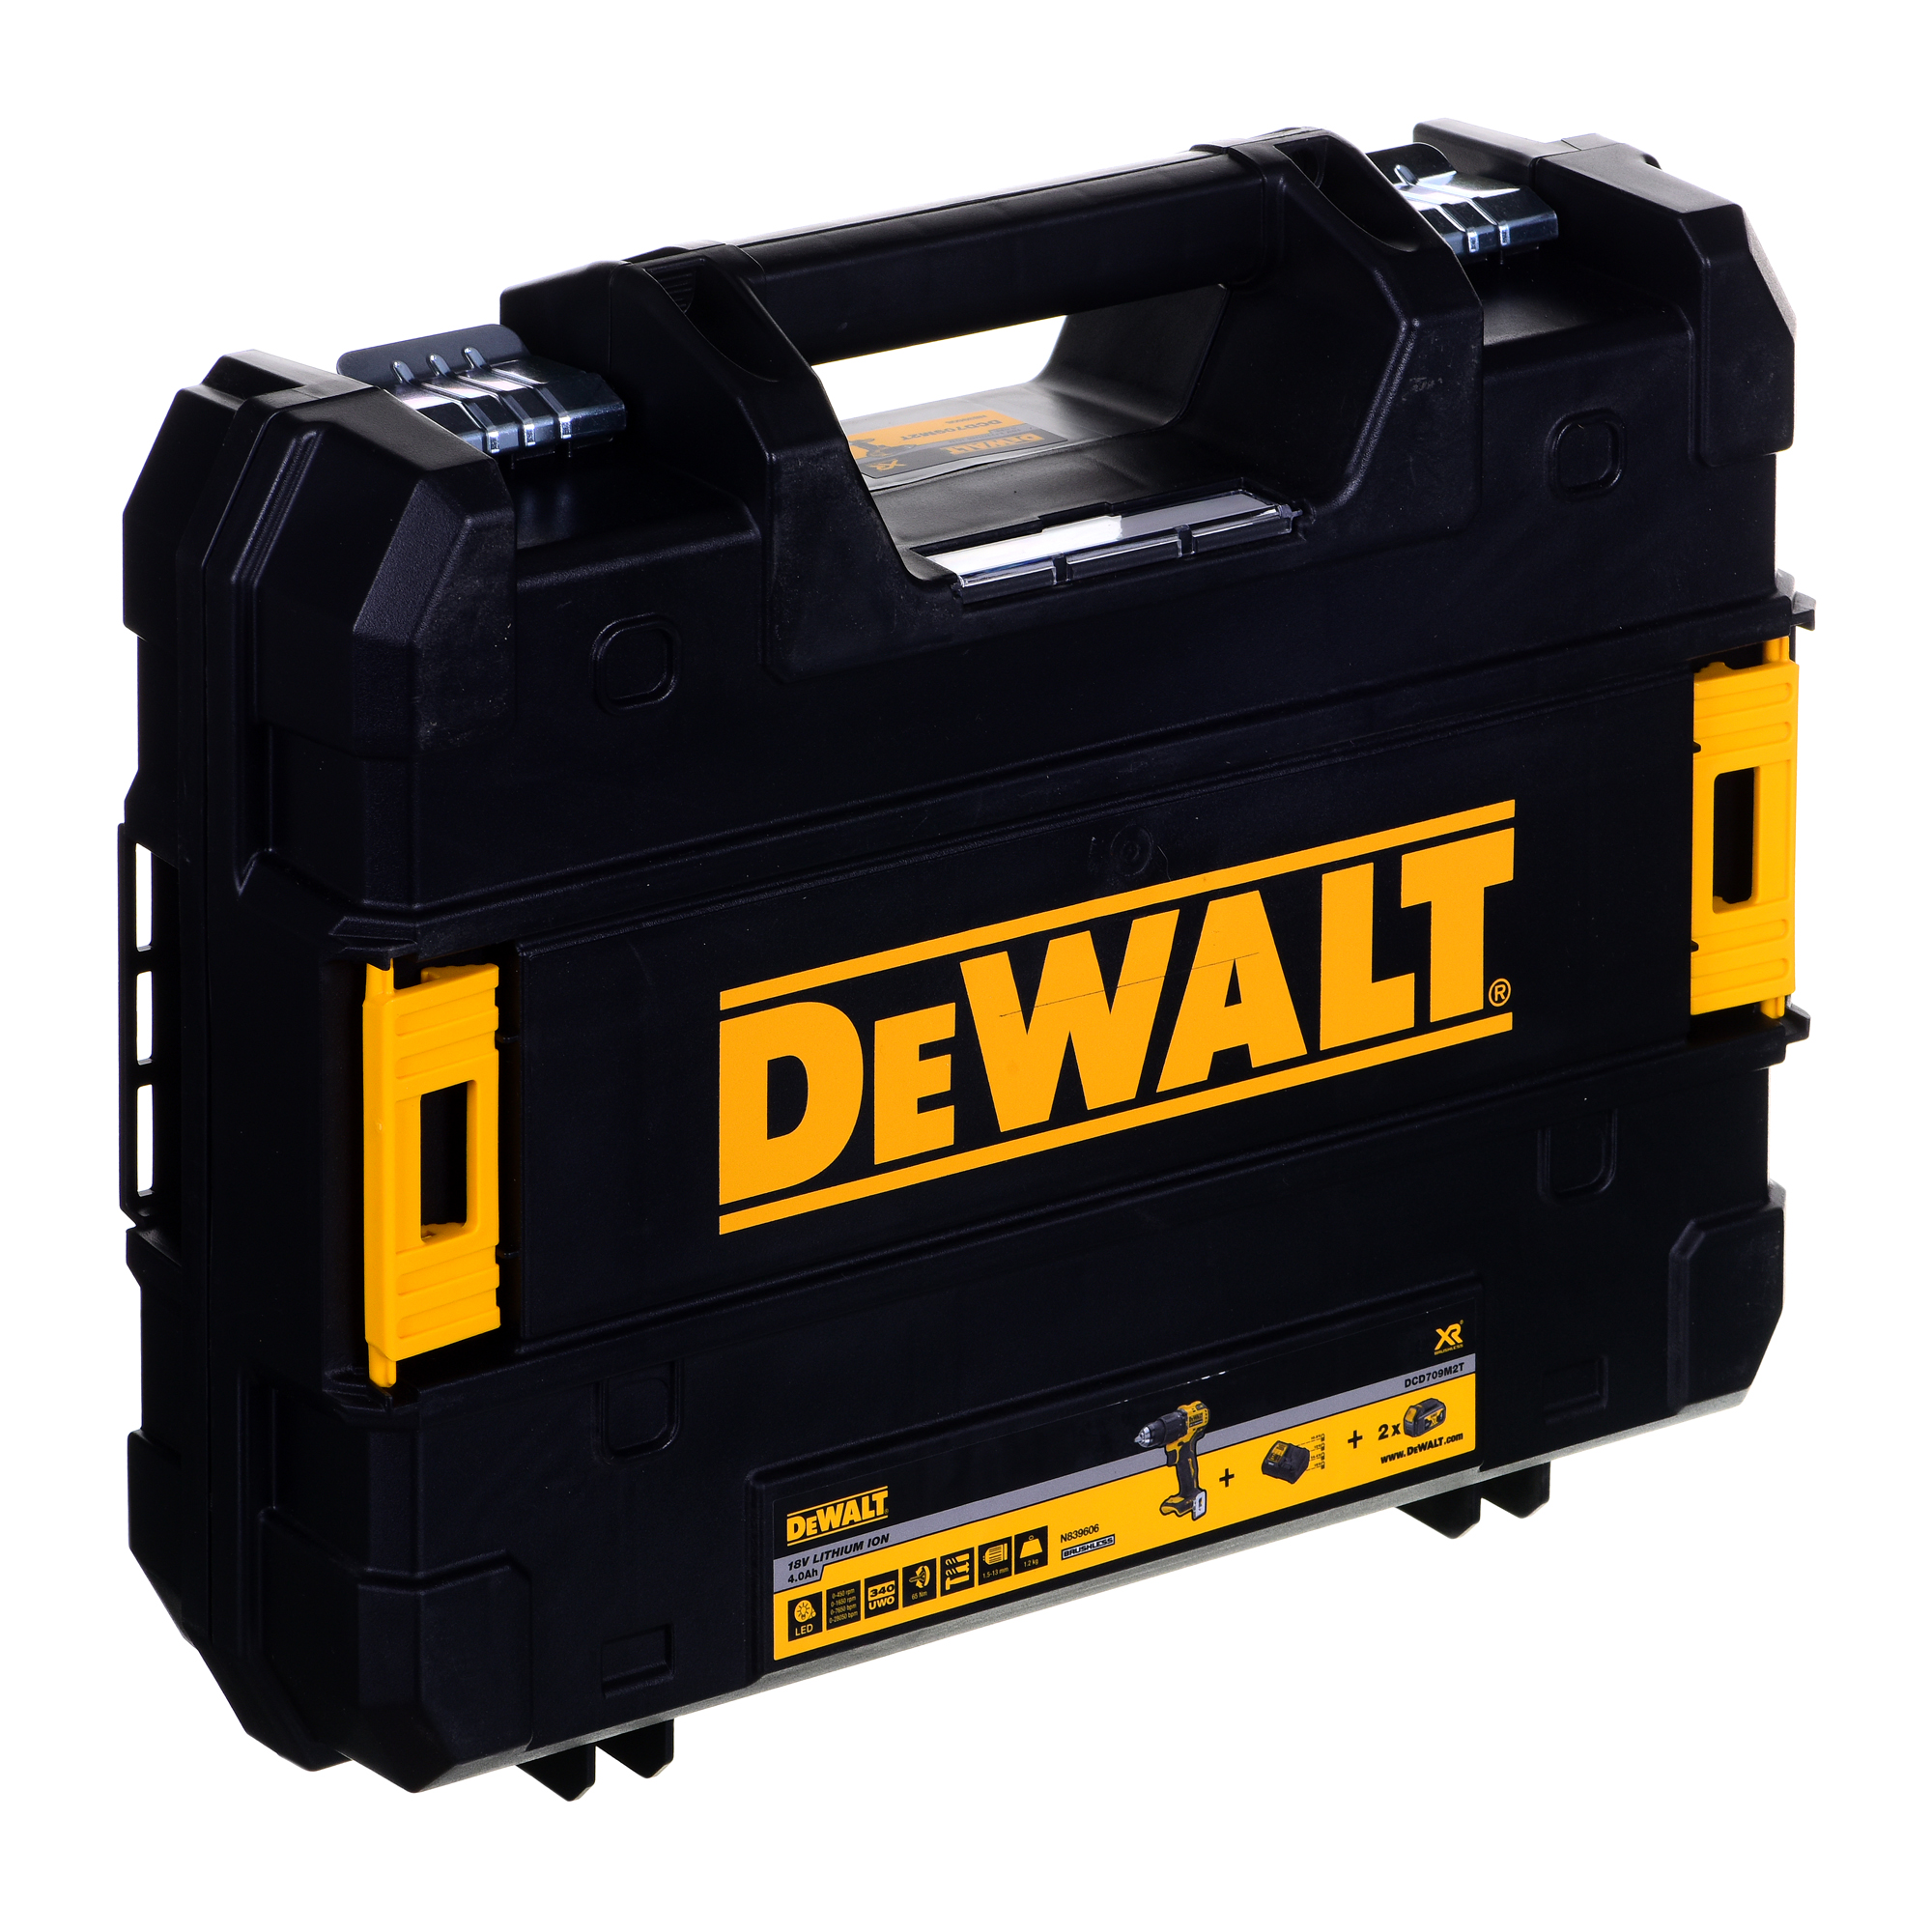 Avvitatore a batteria DeWALT DCD796P2T-QW cacciavite elettrico e avvitatore impulso 2000 Giri/min Nero, Giallo con caricabatteria [DCD796P2T-QW]